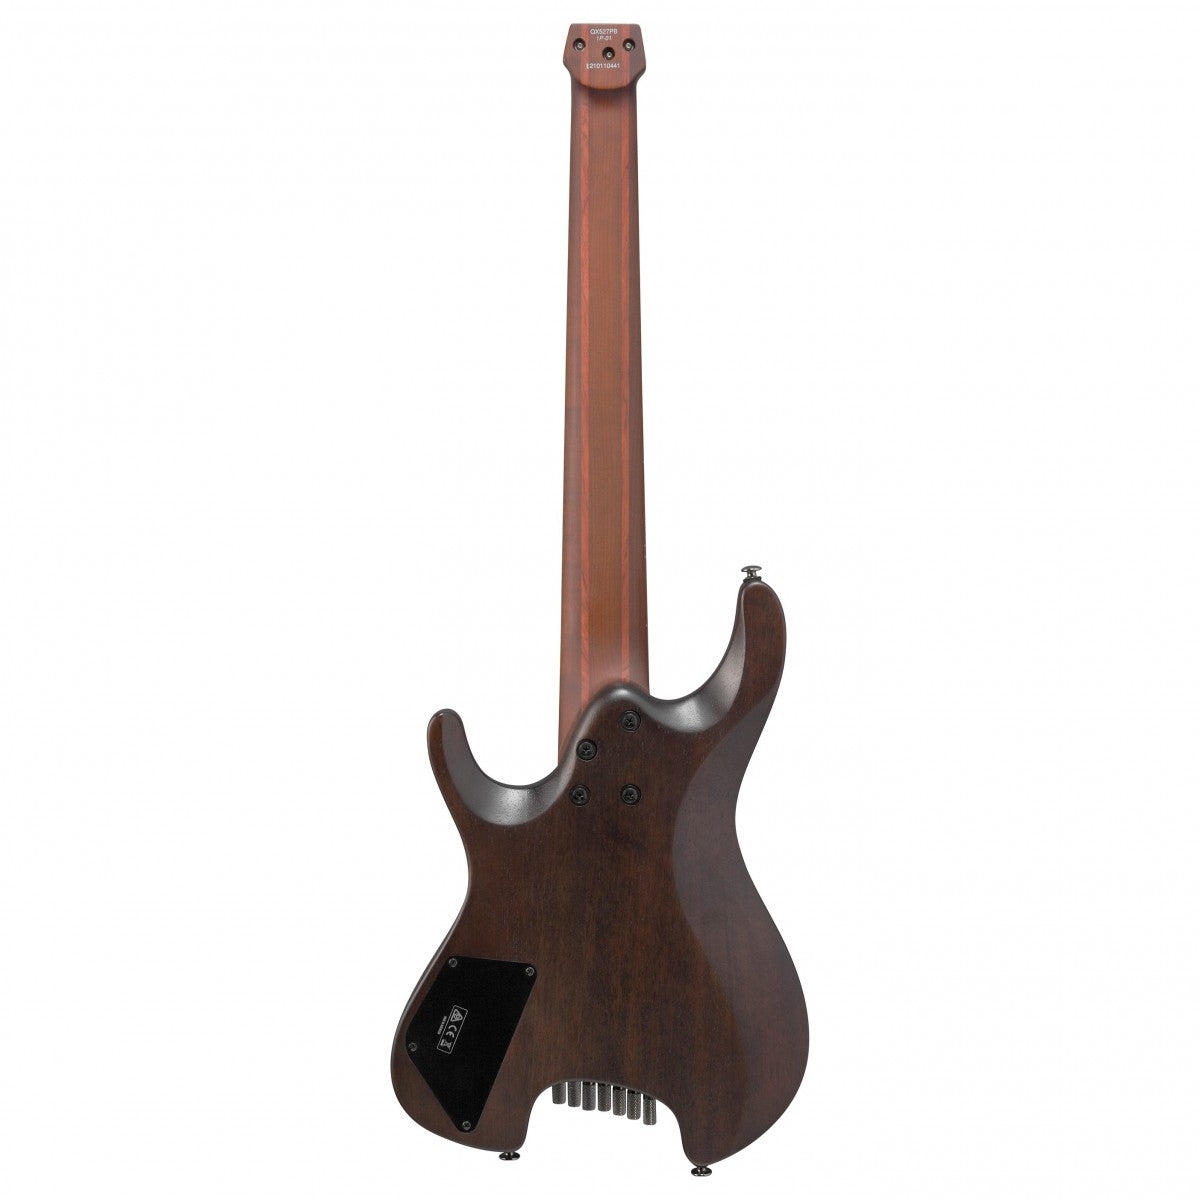 Đàn Guitar Điện Ibanez Q Standard QX527PB 7-strings, Antique Brown Stained - Việt Music